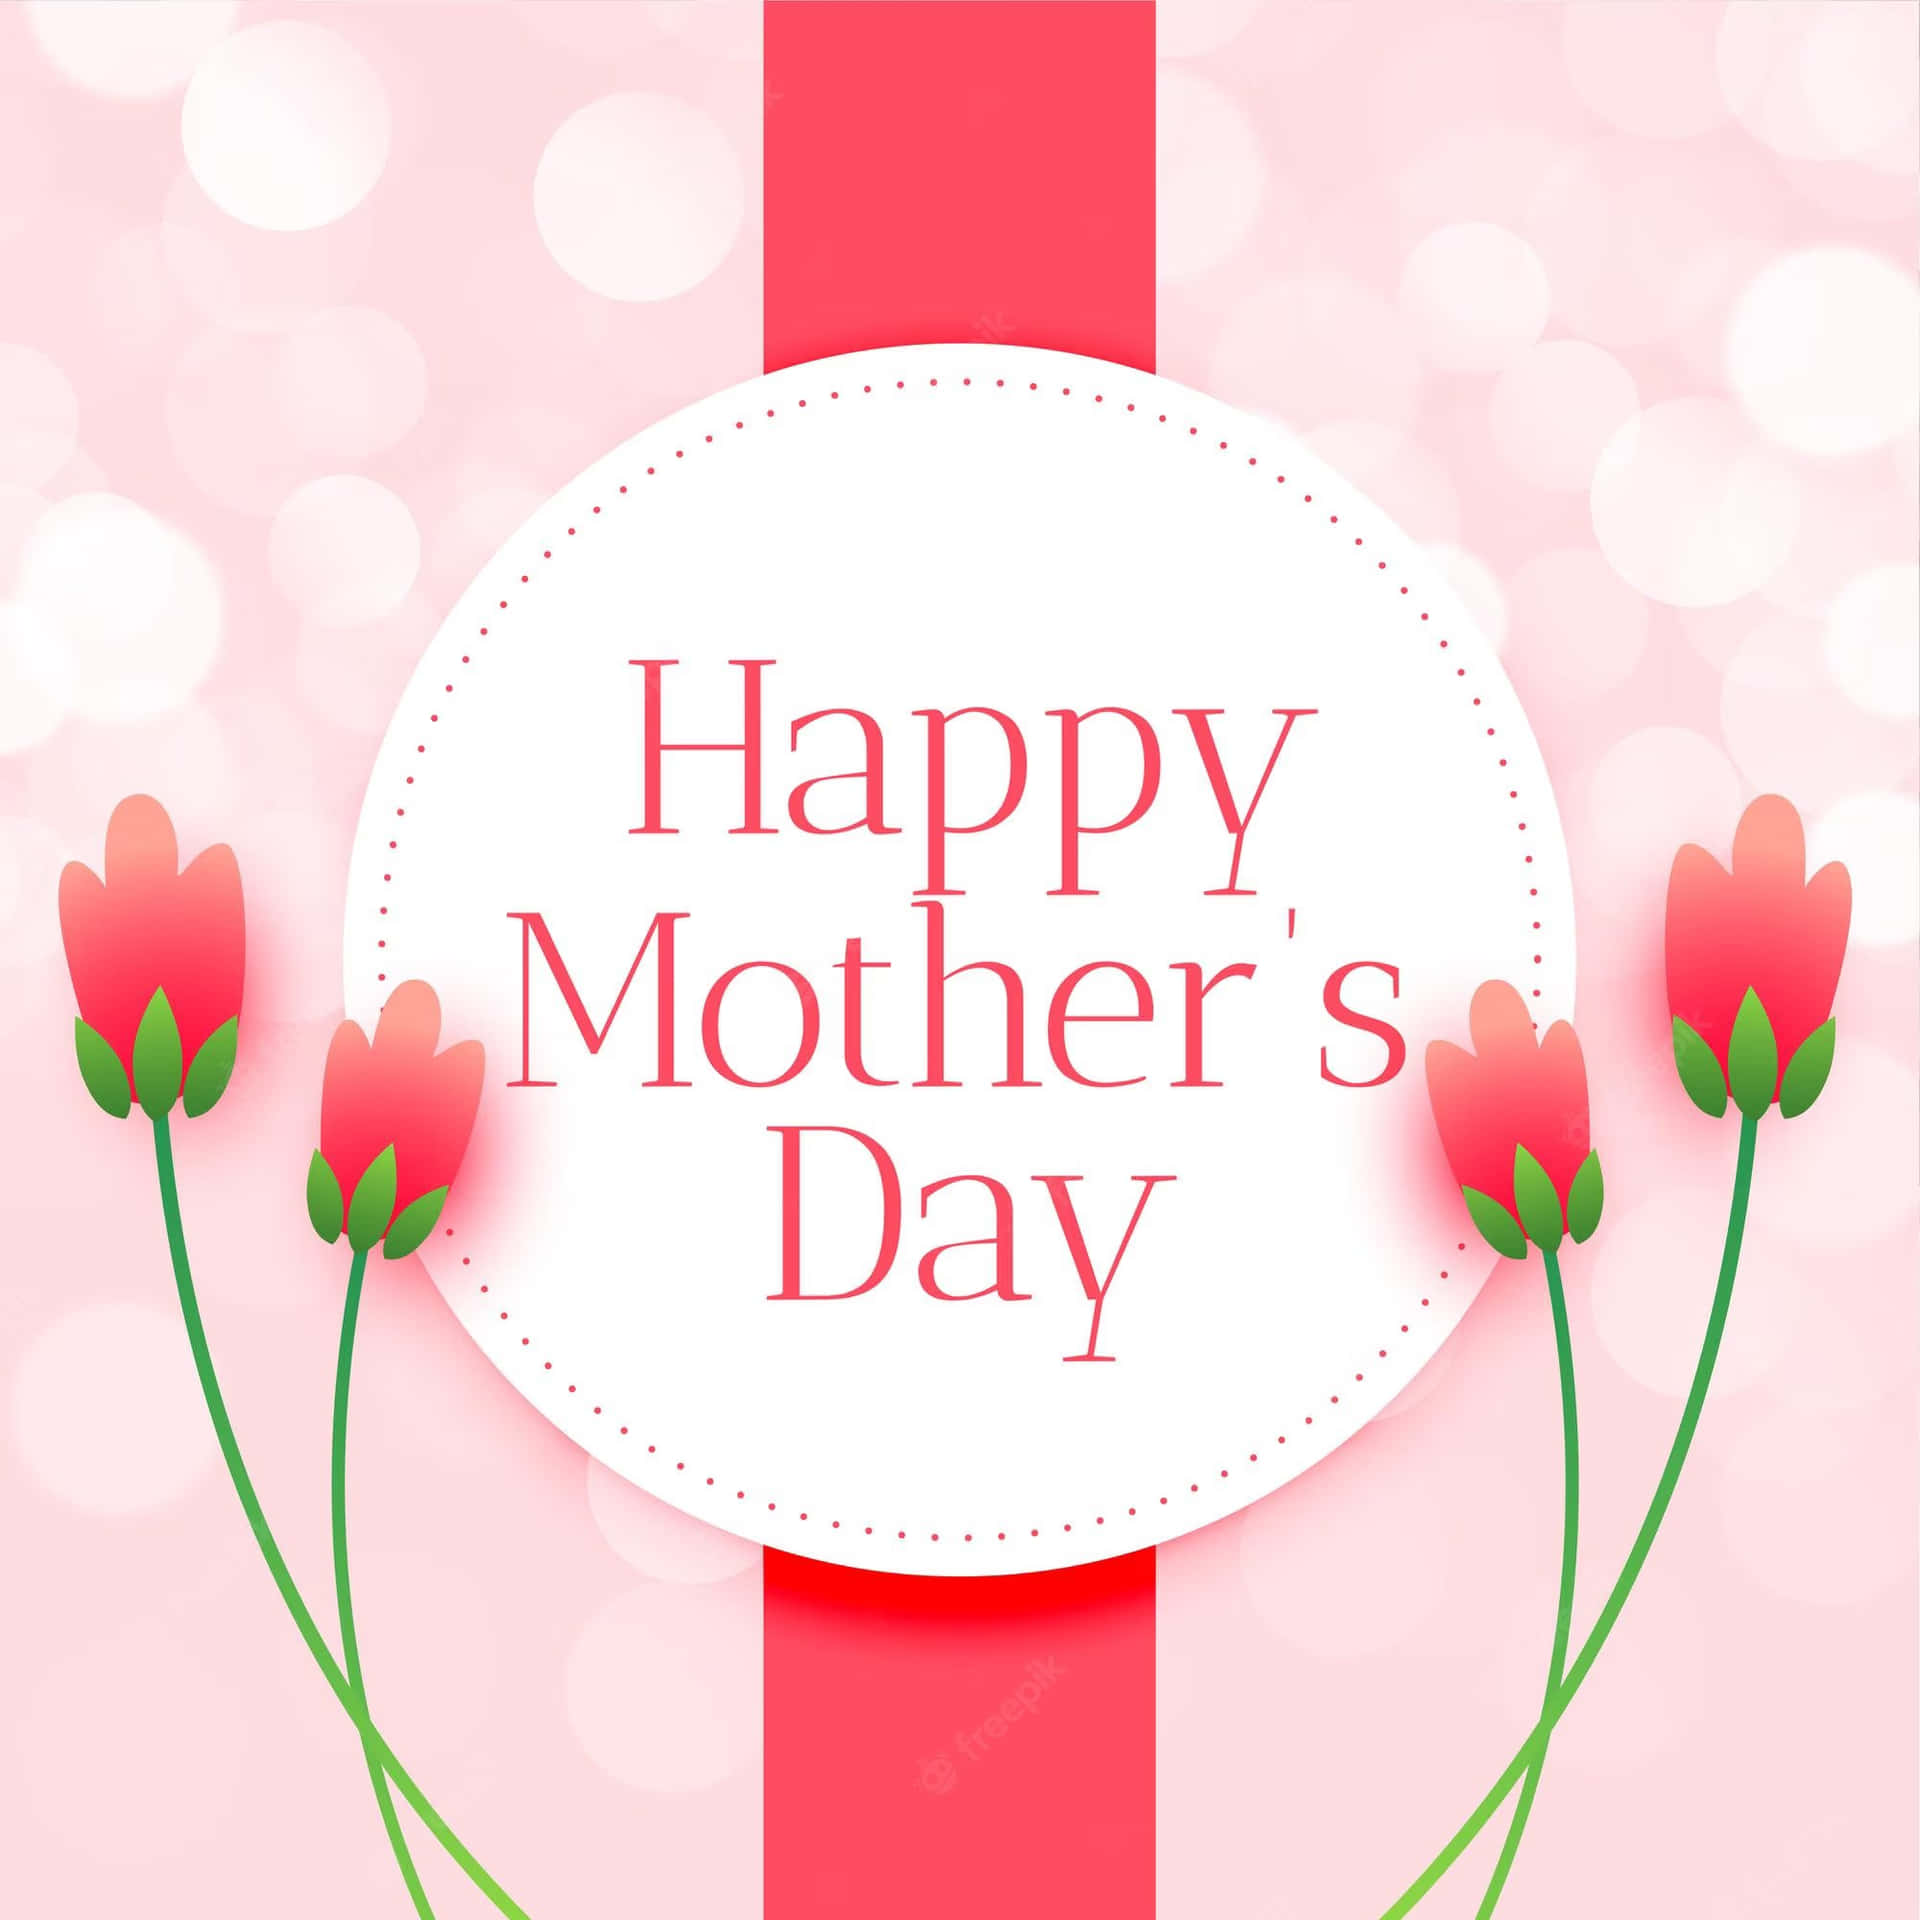 Ønskeralle Mødre En Glædelig Mors Dag!